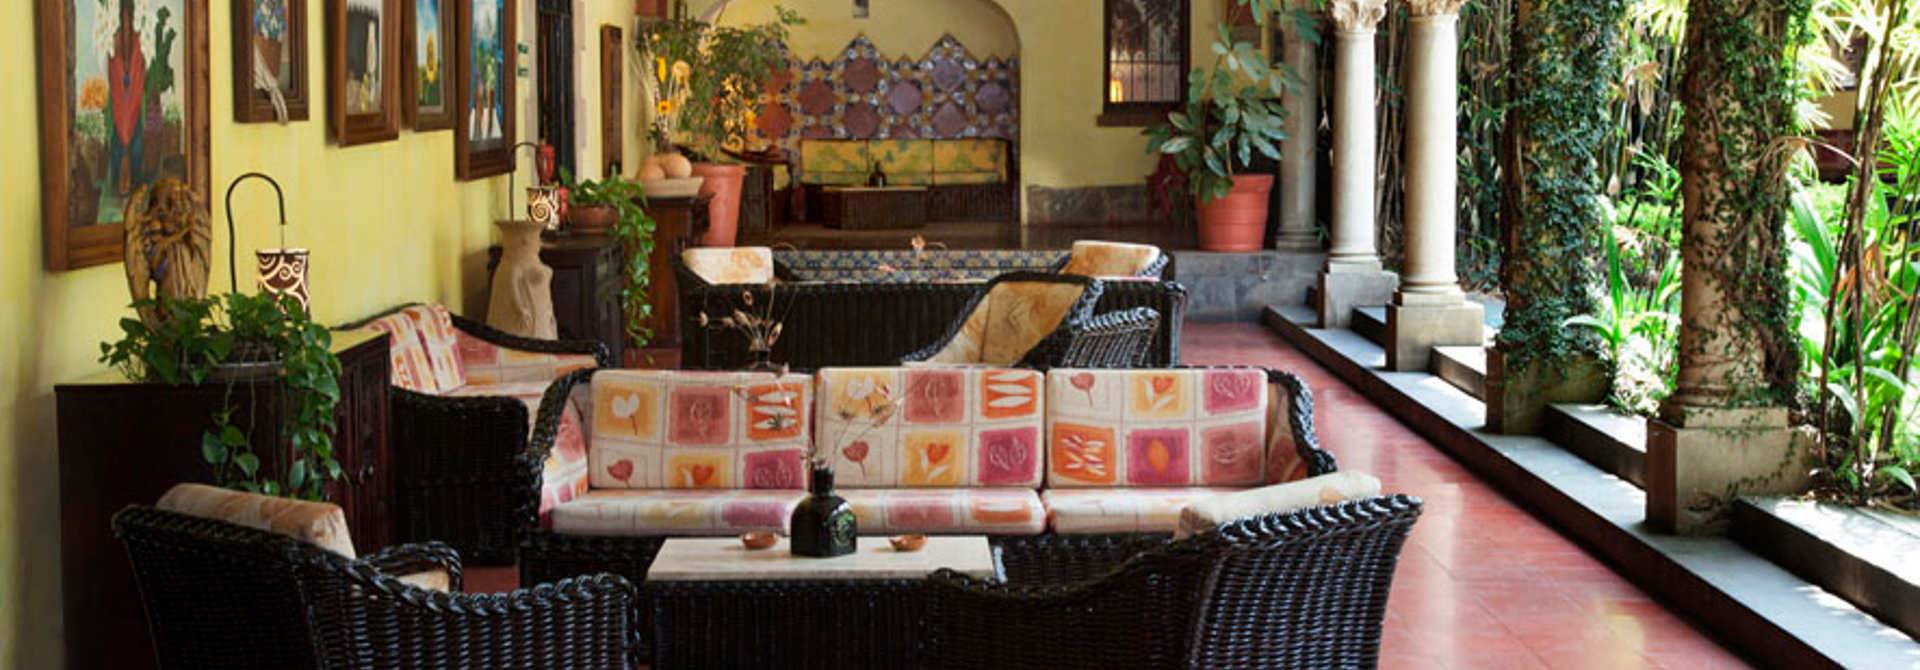 Una casa tradicional mexicana Hotel Racquet Cuernavaca